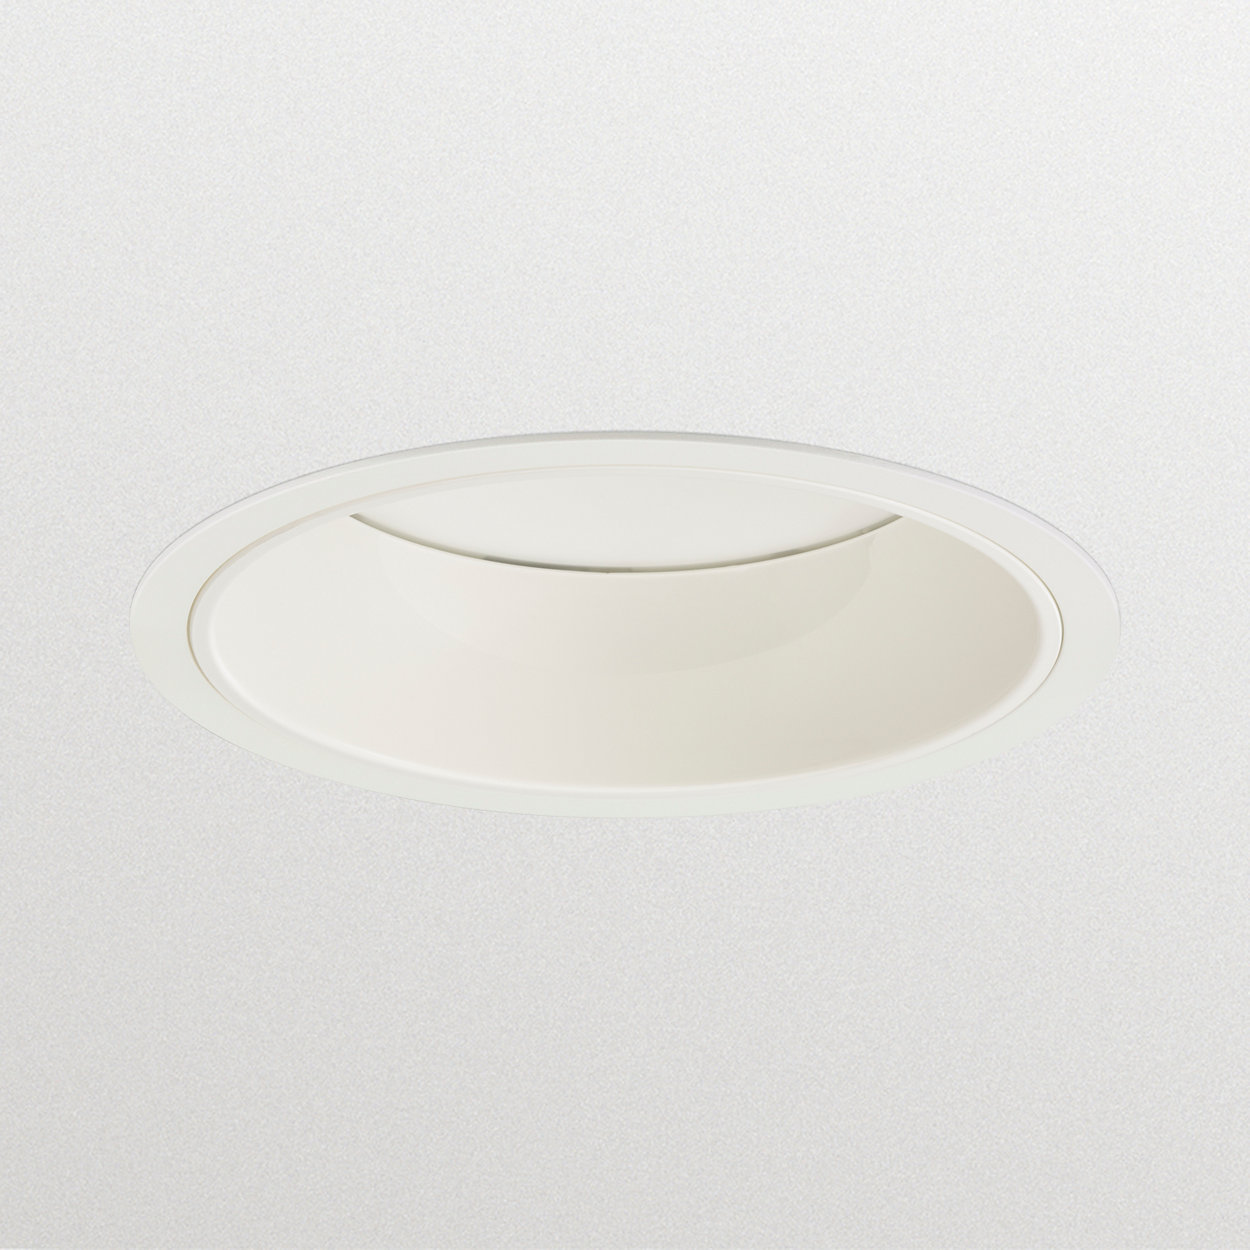 LuxSpace Compact LED gen2 Einbaudownlight – Hohe Effizienz, Komfort und elegantes Design 